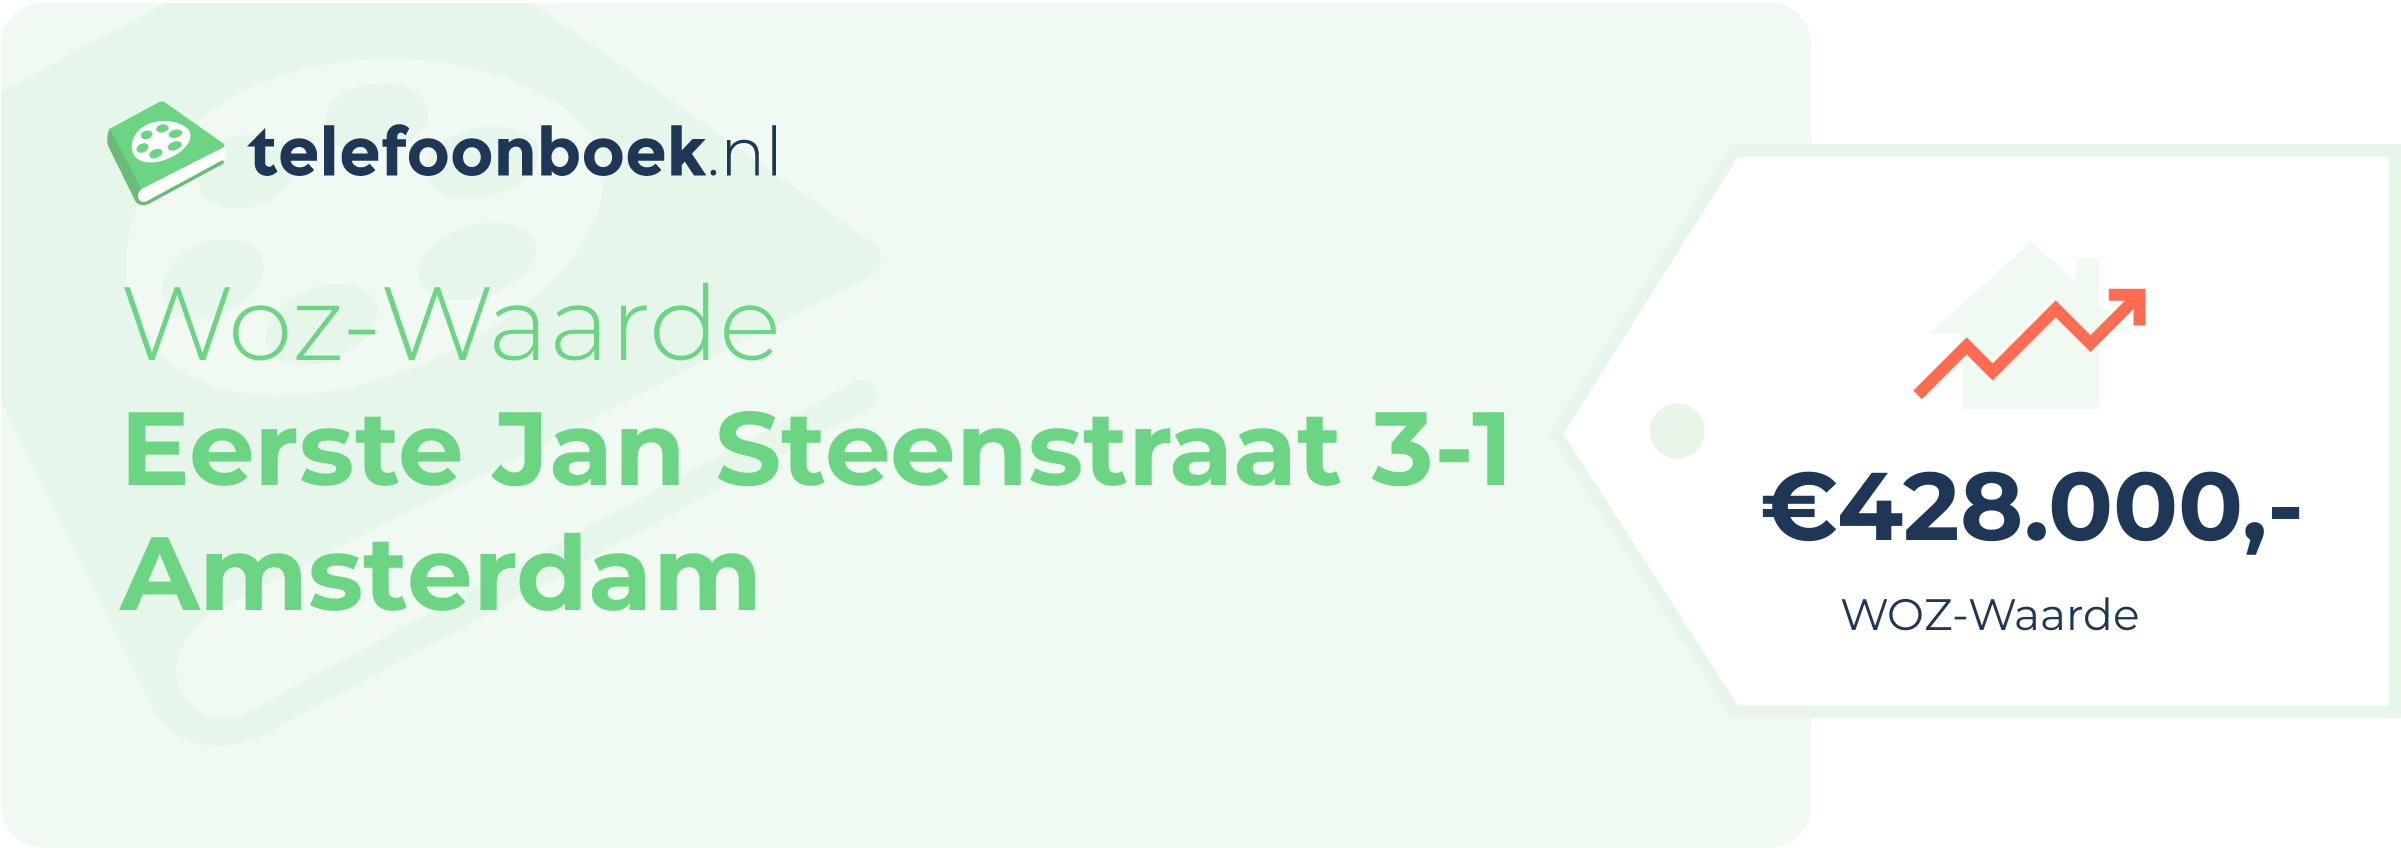 WOZ-waarde Eerste Jan Steenstraat 3-1 Amsterdam